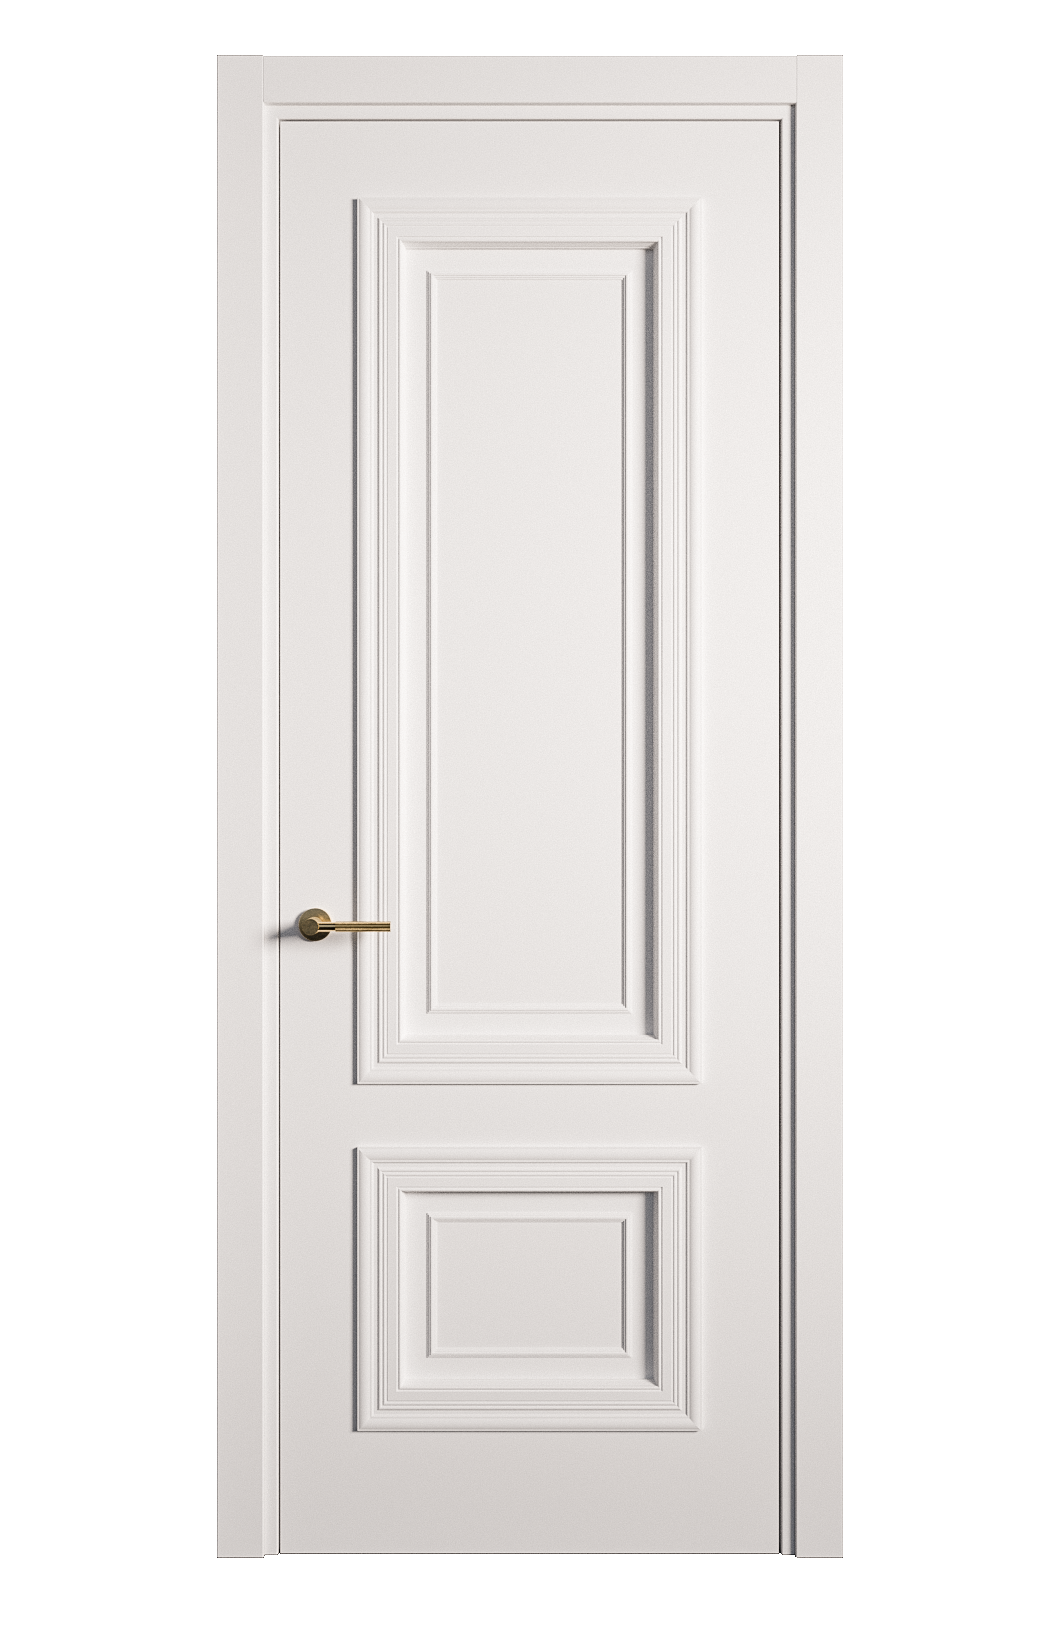 Межкомнатная дверь Мальта-1 глухая эмаль ral 9003 26943